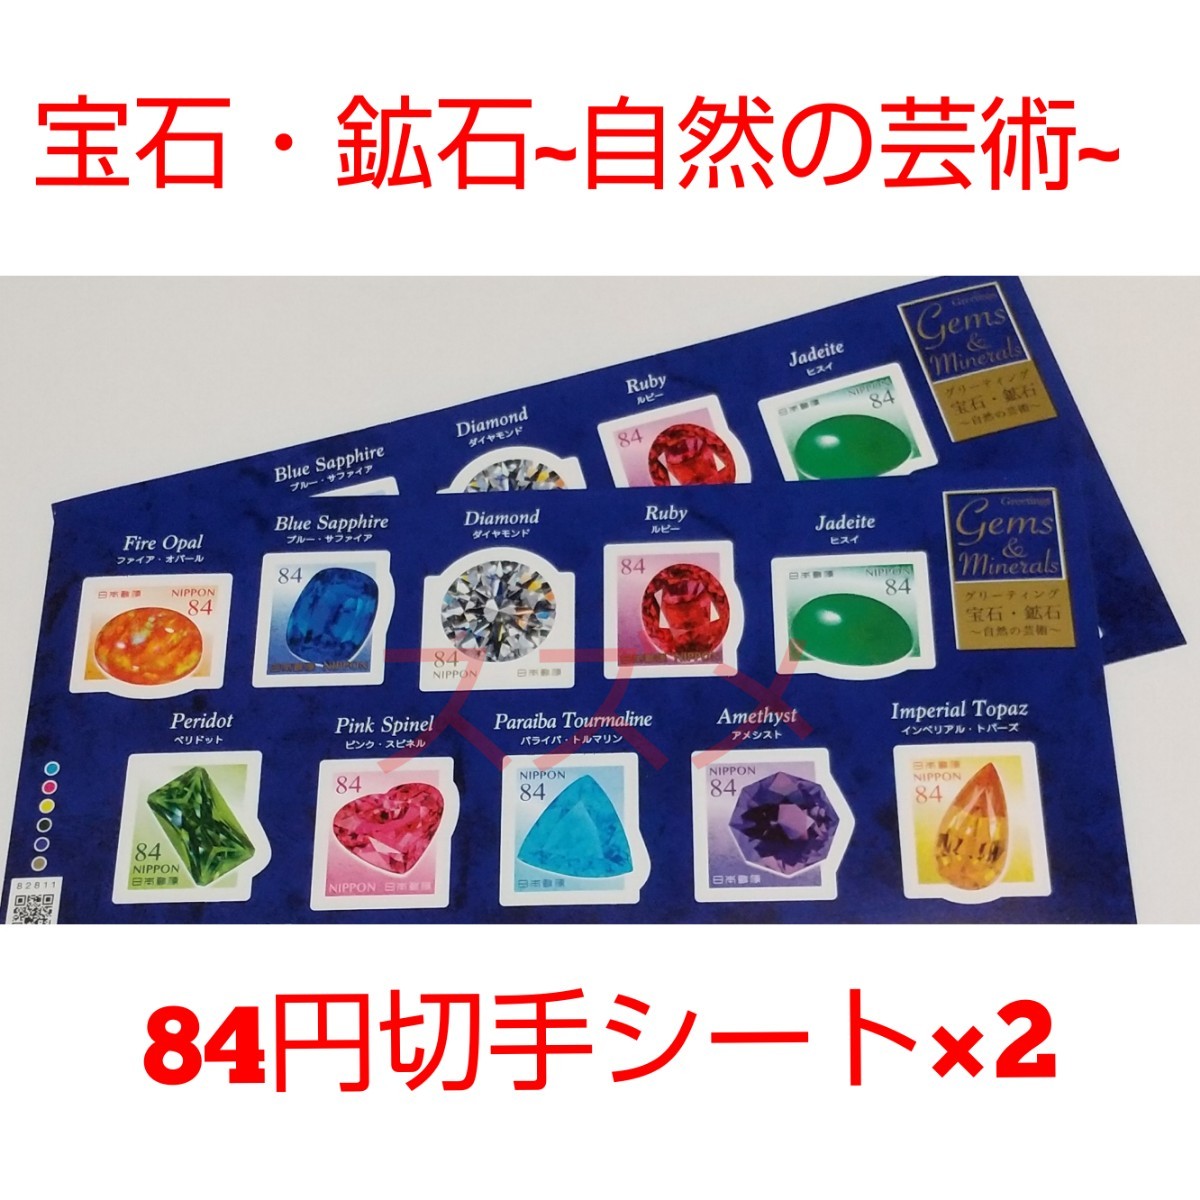 宝石・鉱石~自然の芸術~ 84円 シール切手 2シート 1680円分   記念切手